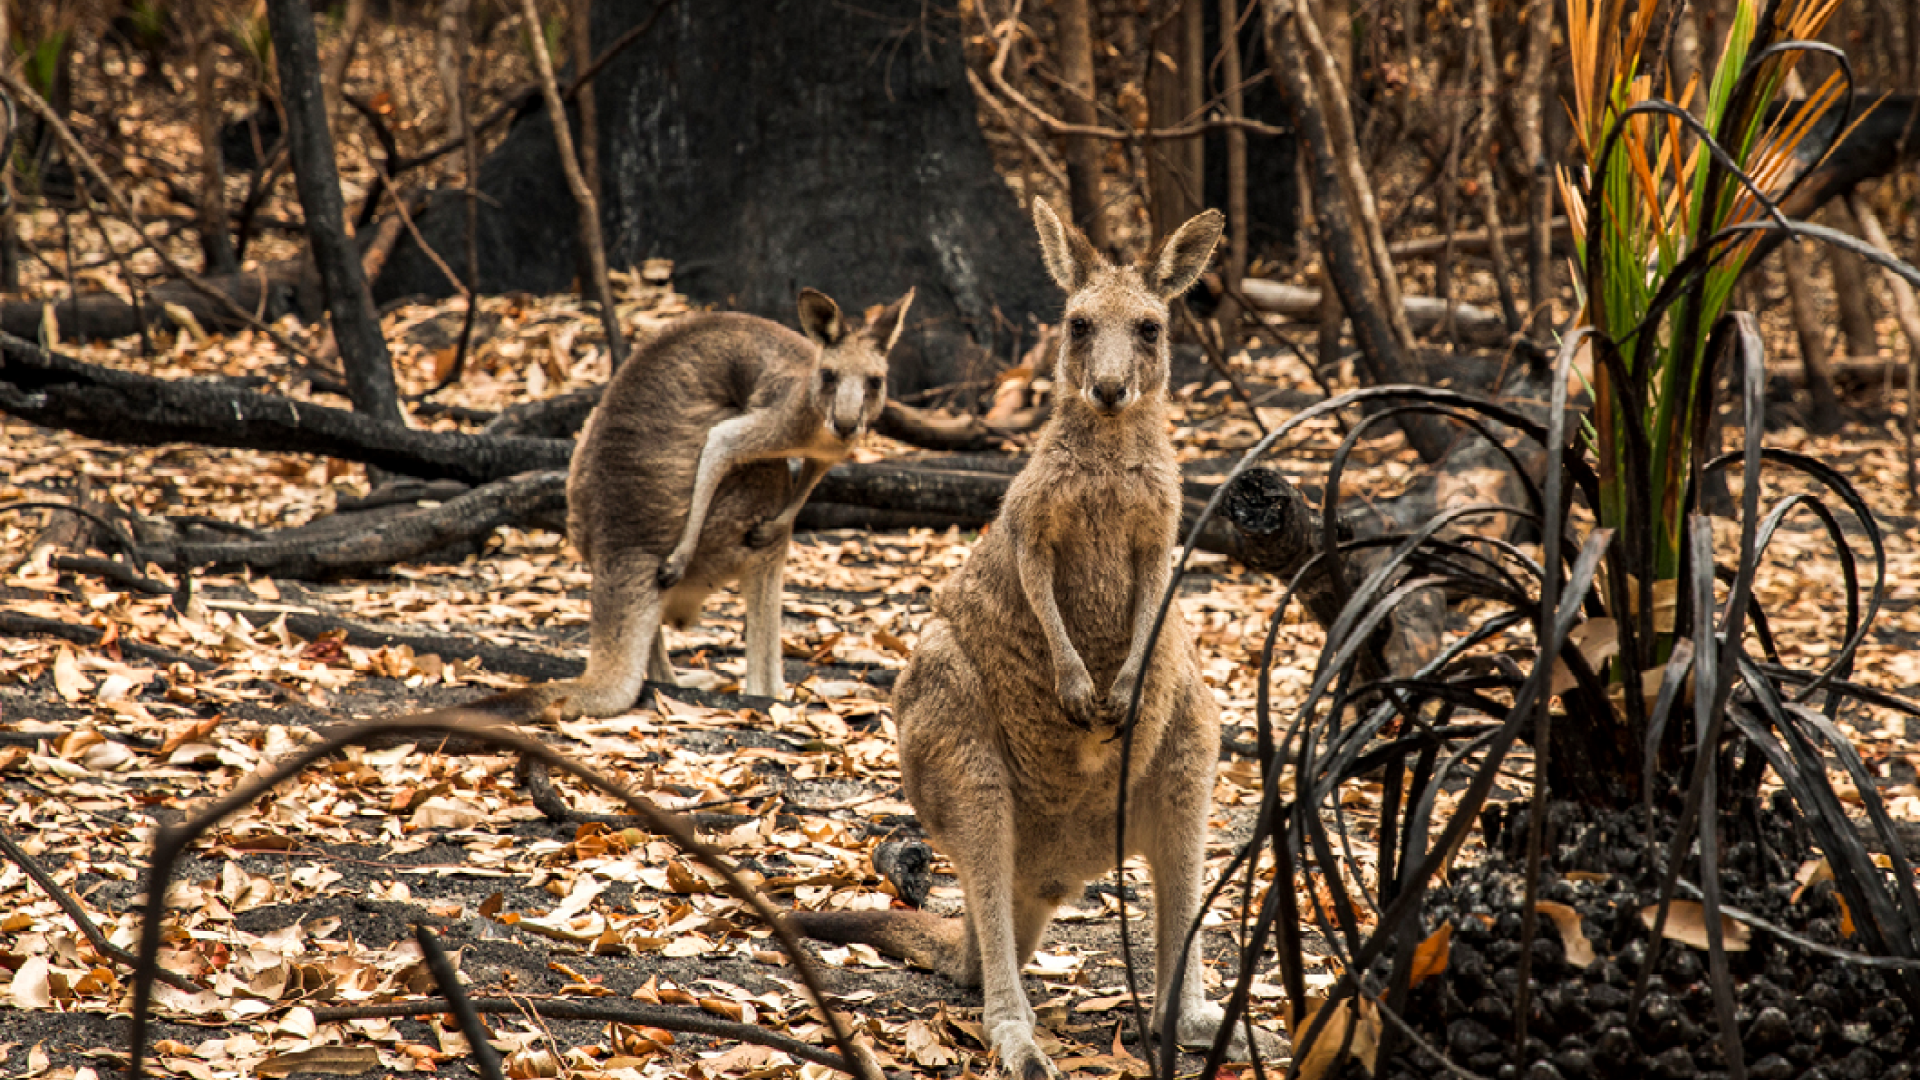 Kangaroos in a bushfire